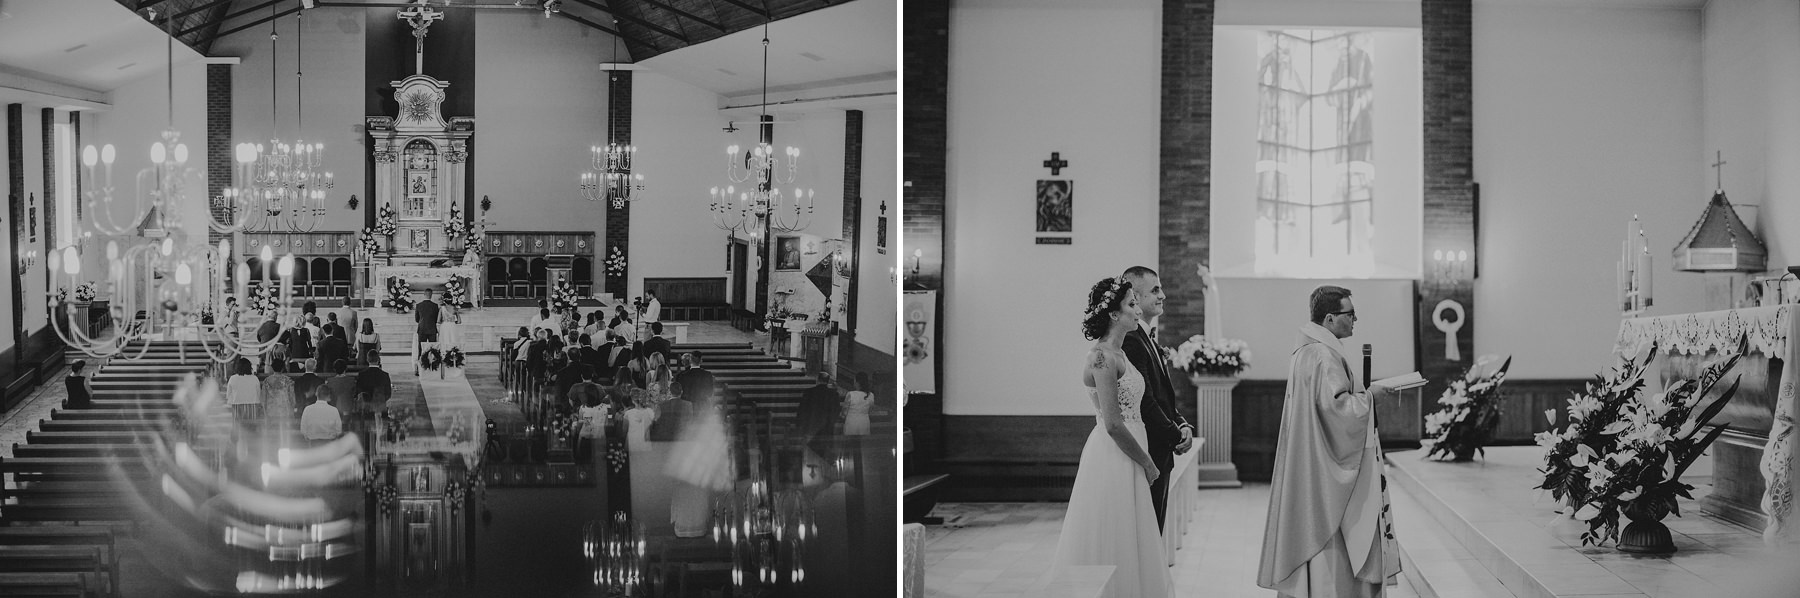 250 folwark wiazy wesele w stodole krakow slub plenerowy fotograf slubny karol nycz photography